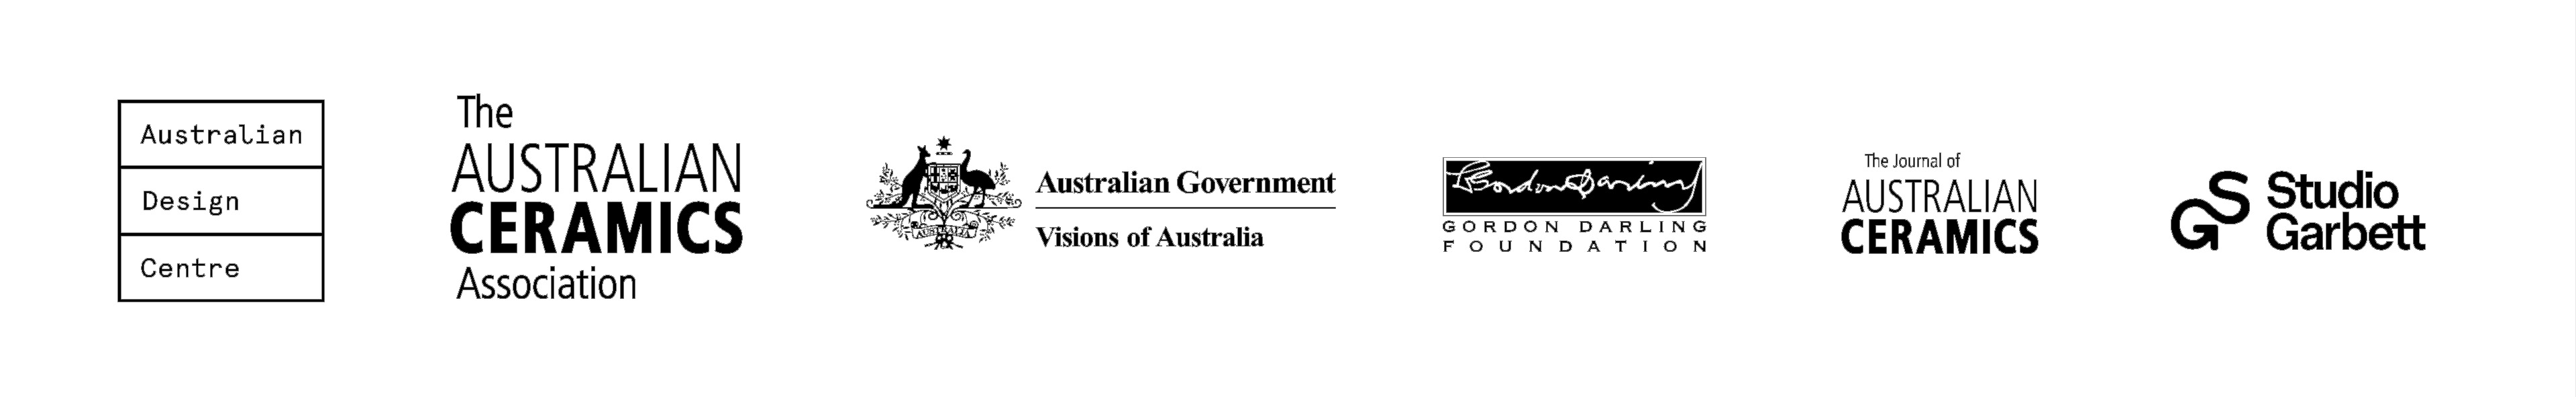 sponsor logos - Australian Design Centre, The Australian Ceramics Association, the Australian Government, the Gordon Darling Foundation, The Journal Australian Ceramics and Studio Garbett